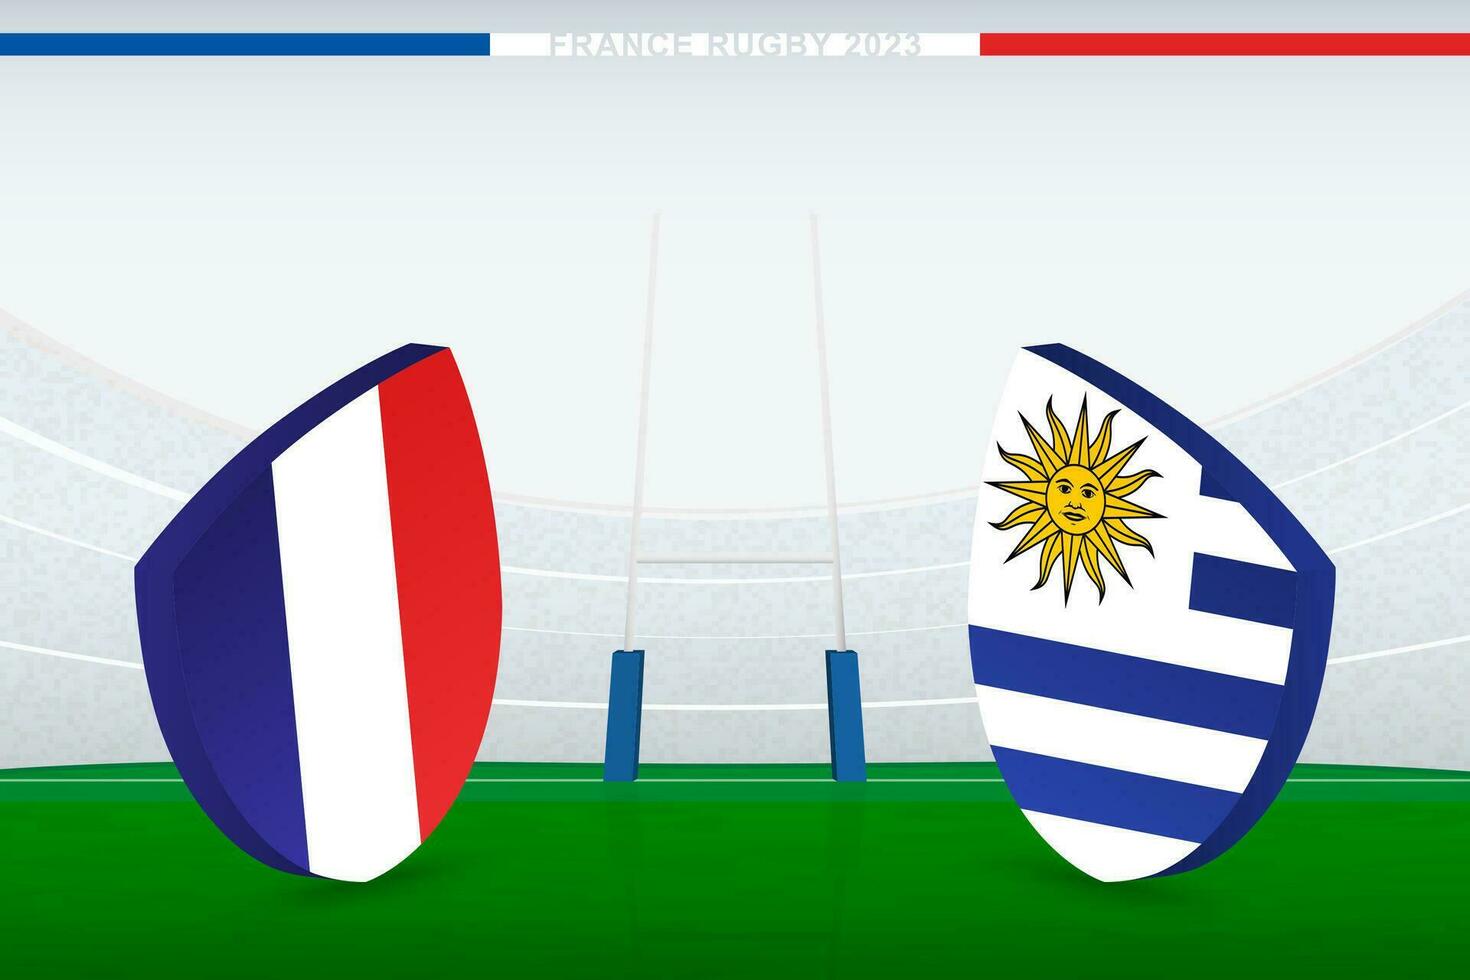 incontro fra Francia e Uruguay, illustrazione di Rugby bandiera icona su Rugby stadio. vettore